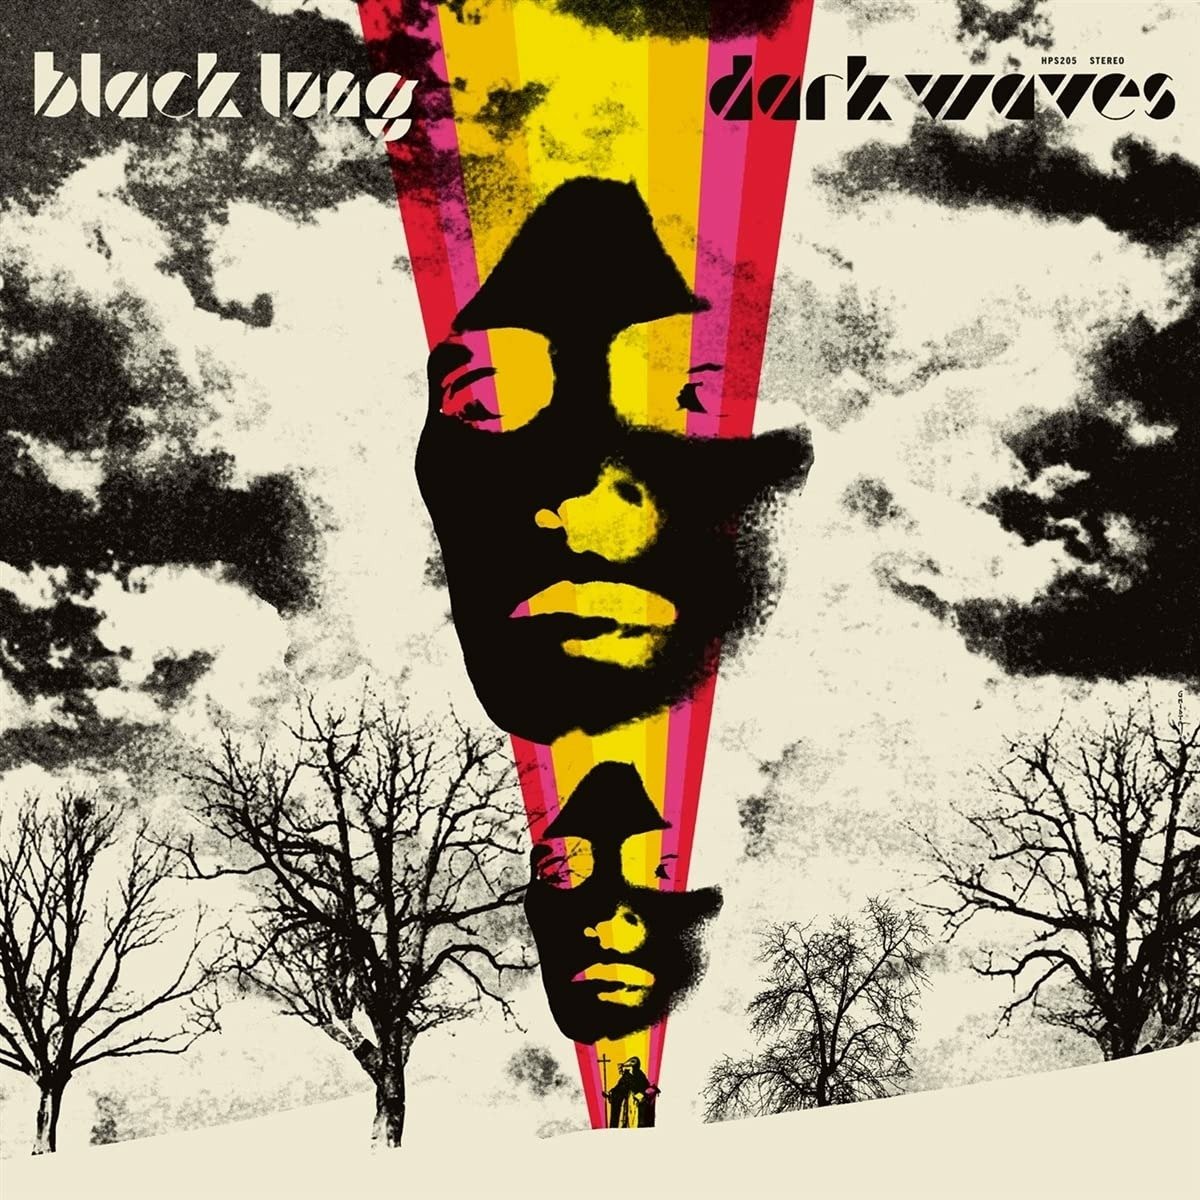 BLACK LUNG - DARK WAVES, Vinyl